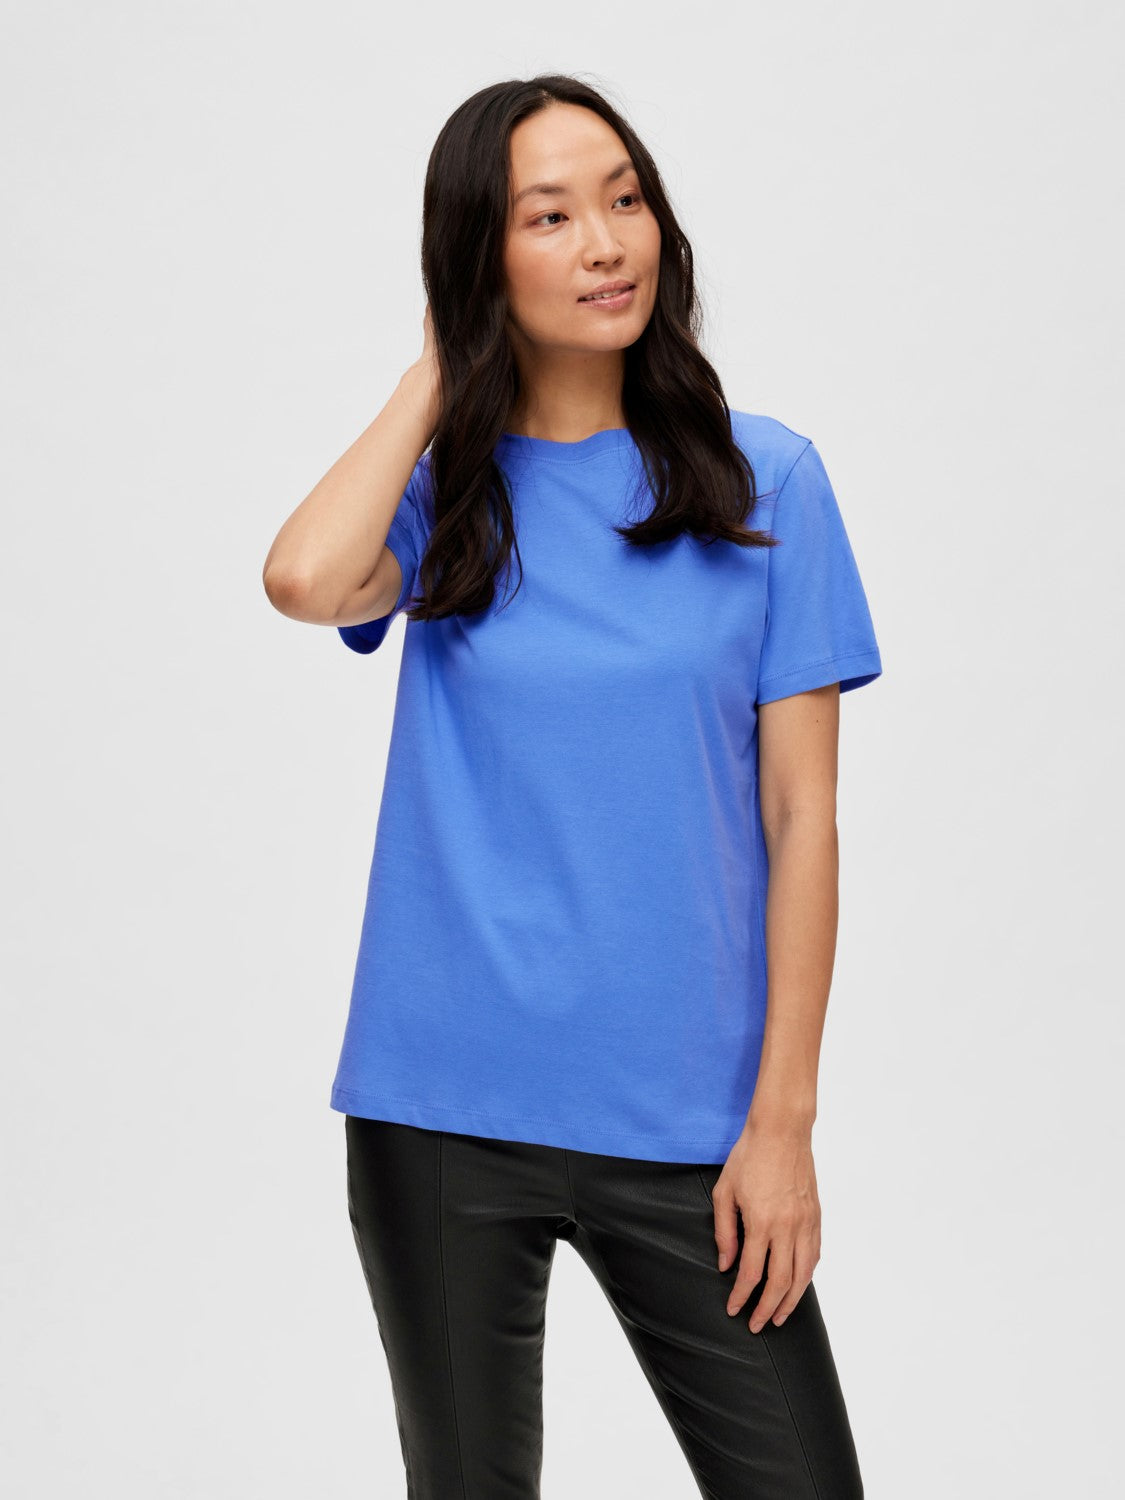 
                  
                    SLFESSENTIAL Ultramarinfarbenes T-Shirt mit O-Ausschnitt
                  
                